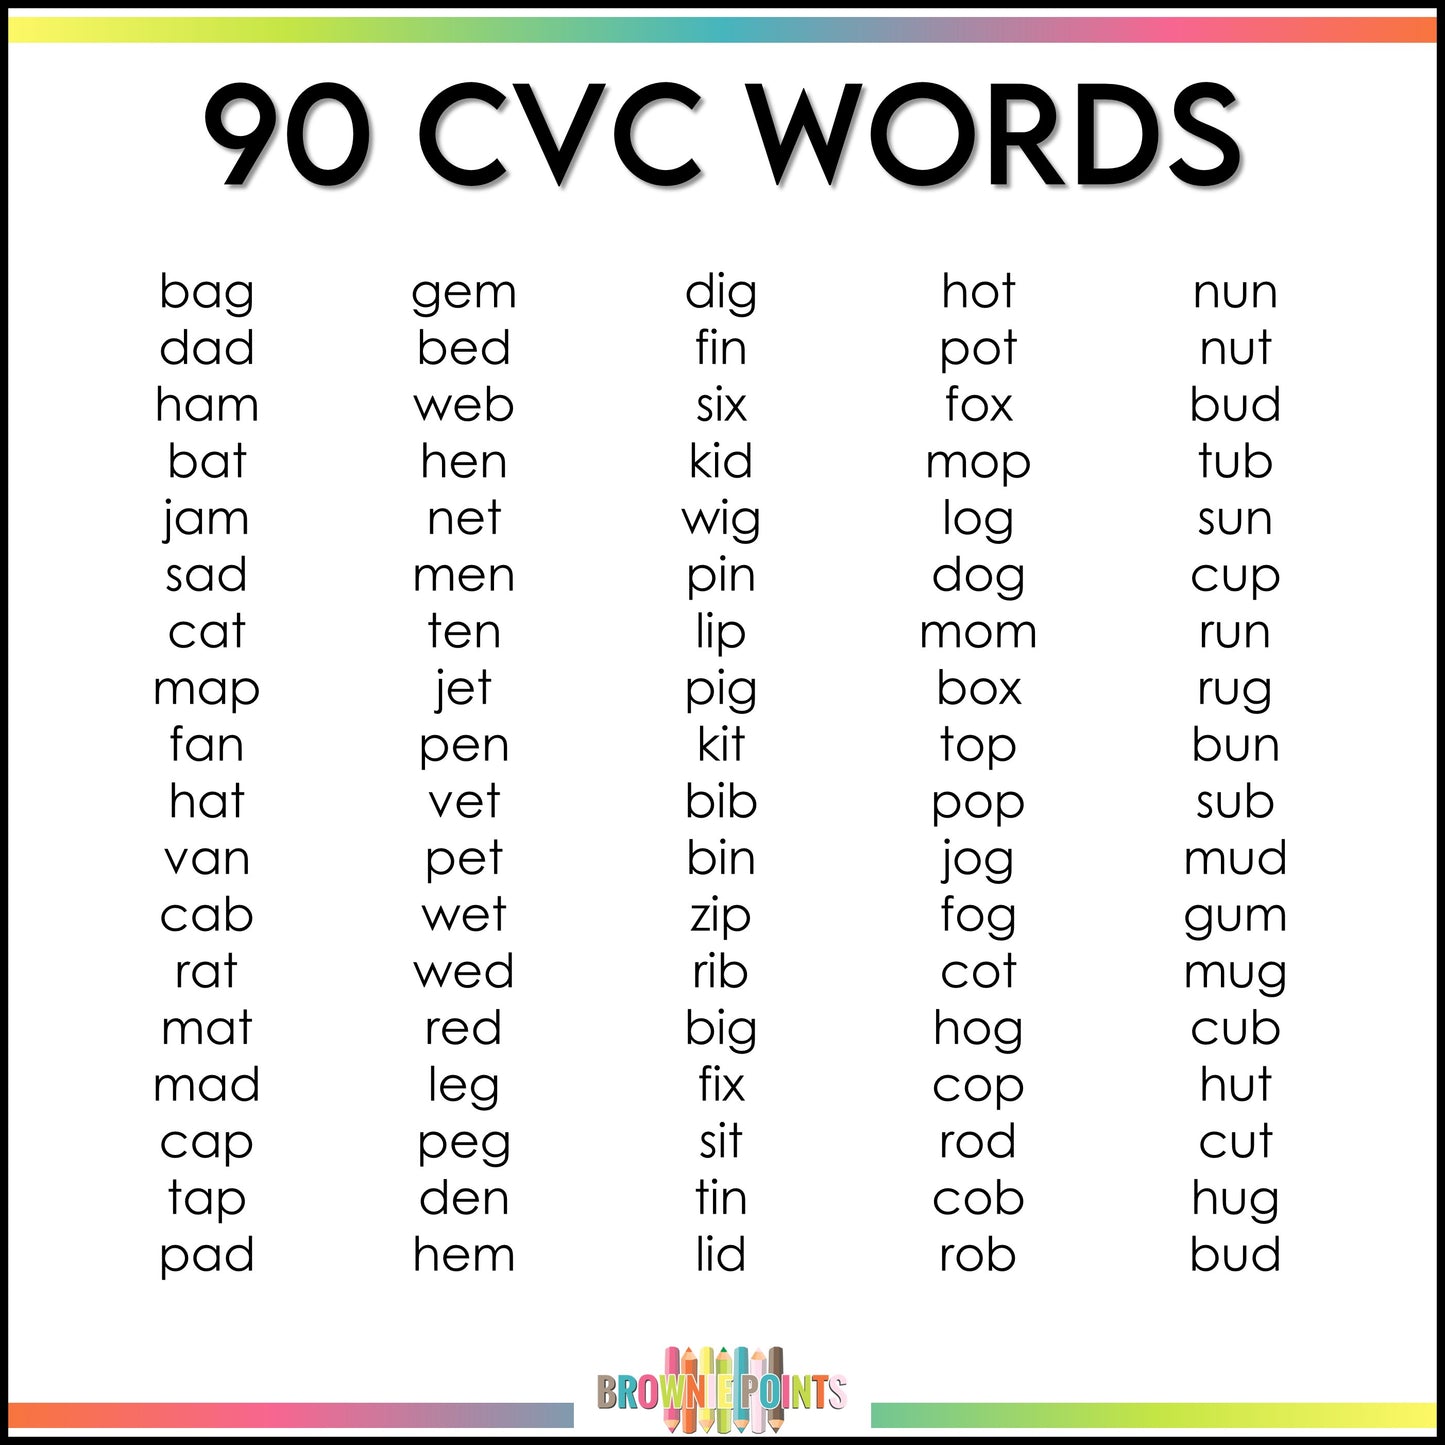 CVC Words Matching Mats